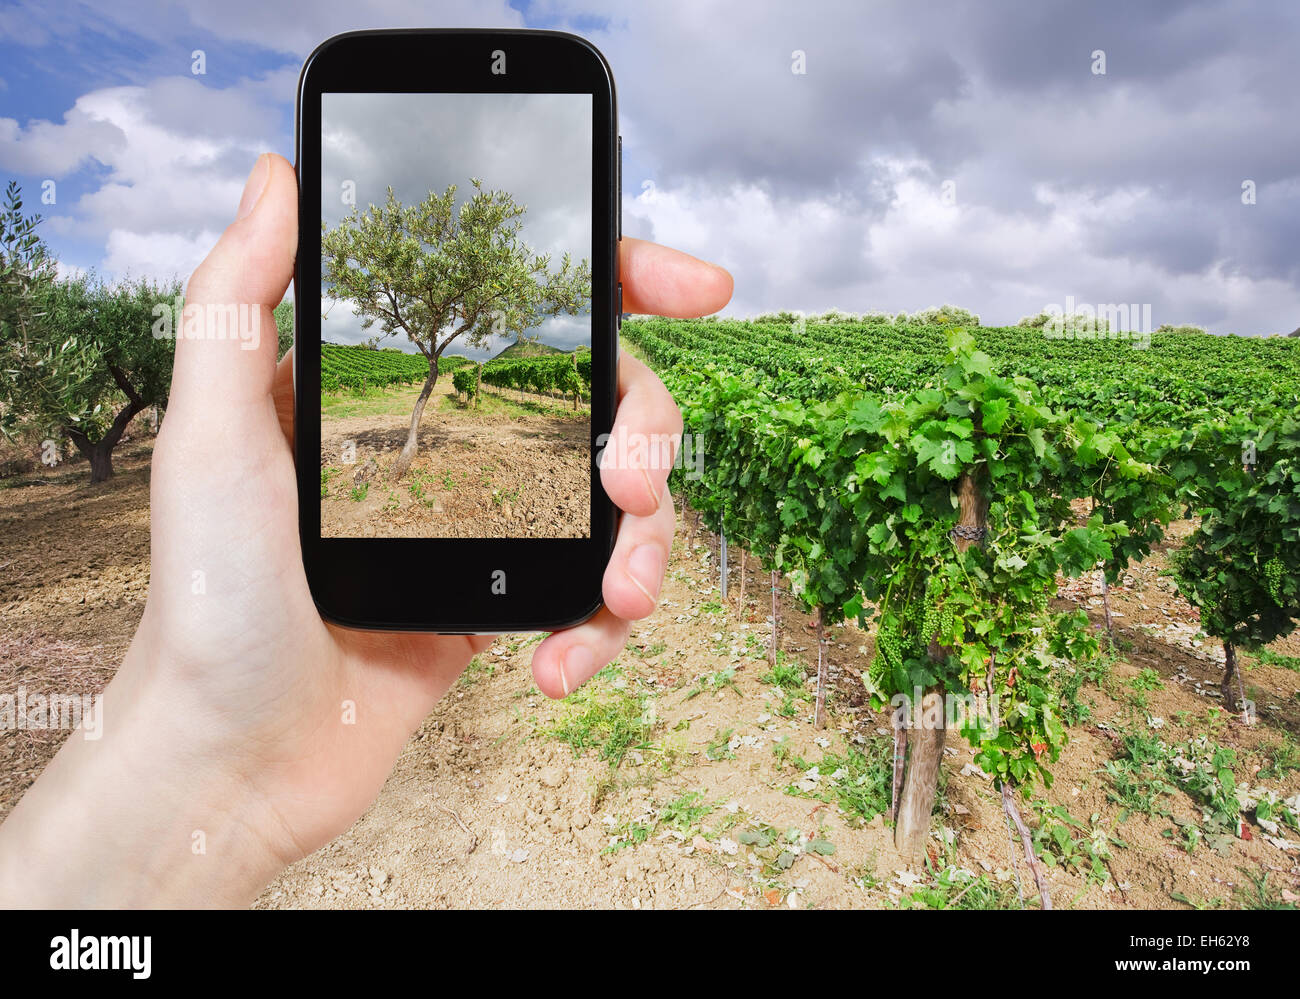 Reisen Sie Konzept - Touristen nehmen Foto Garten mit Olivenbäumen und Weinbergen auf sanften Abhang Ätna Region Sizilien auf mobile Gadget, Ital Stockfoto